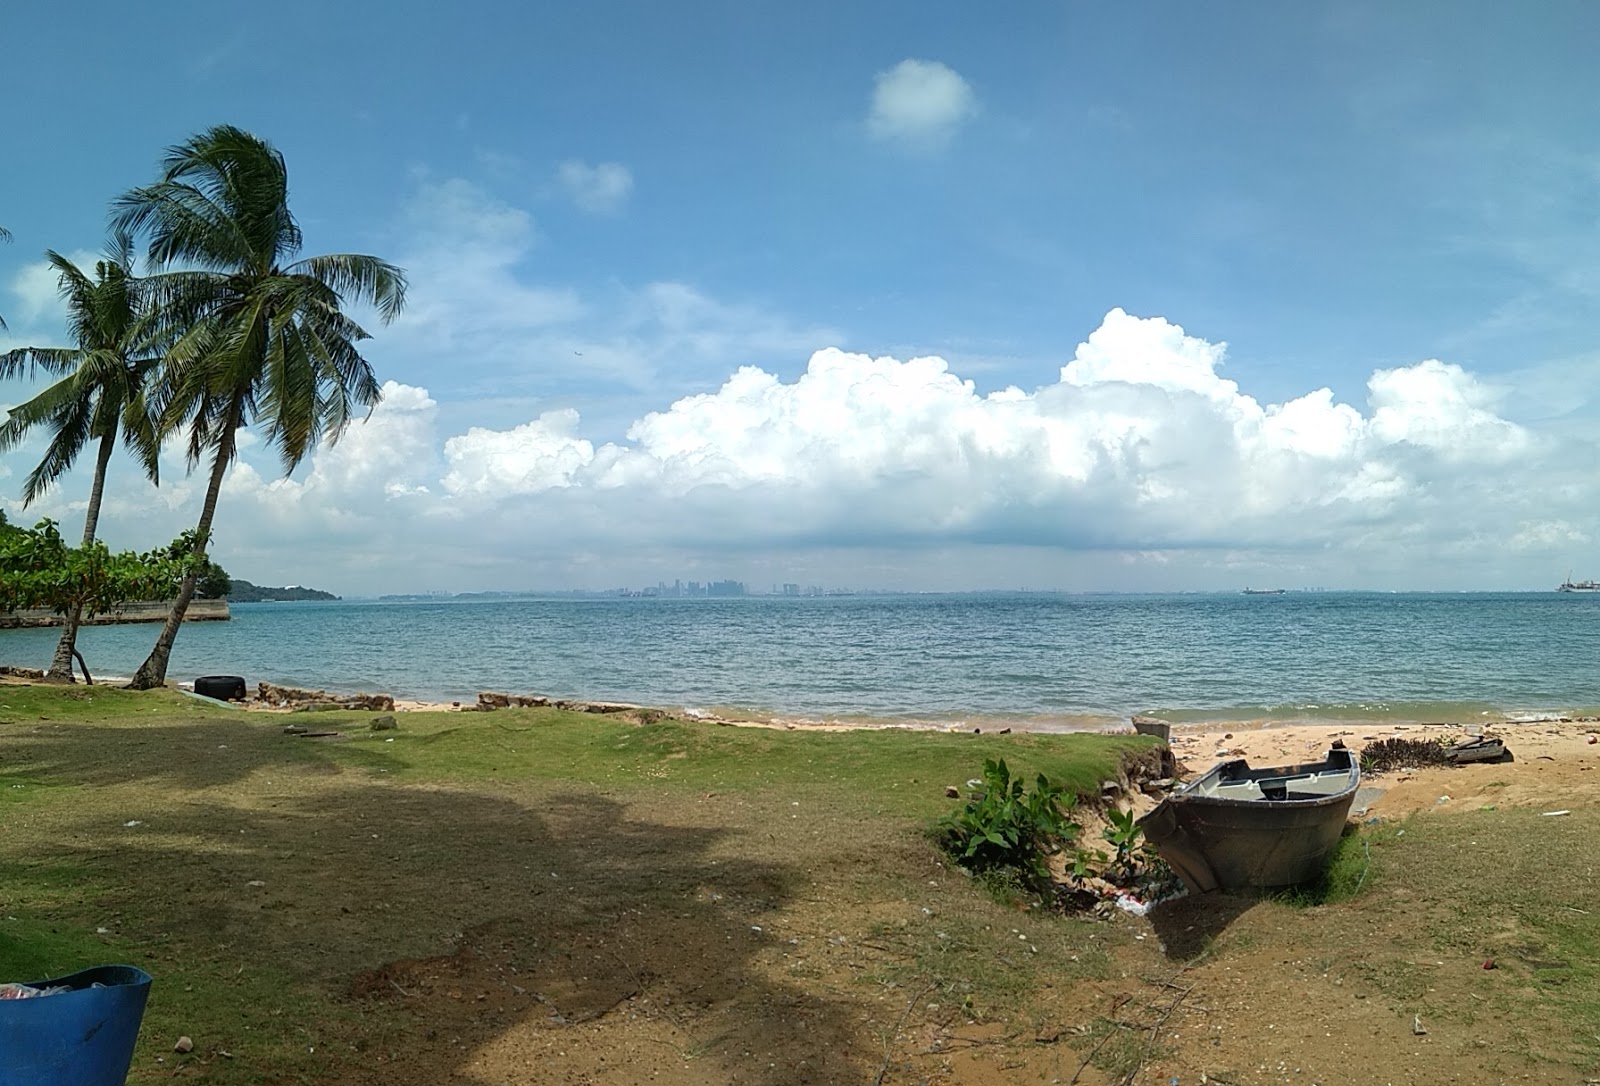 Pantai Tanjung Pinggir'in fotoğrafı vahşi alan